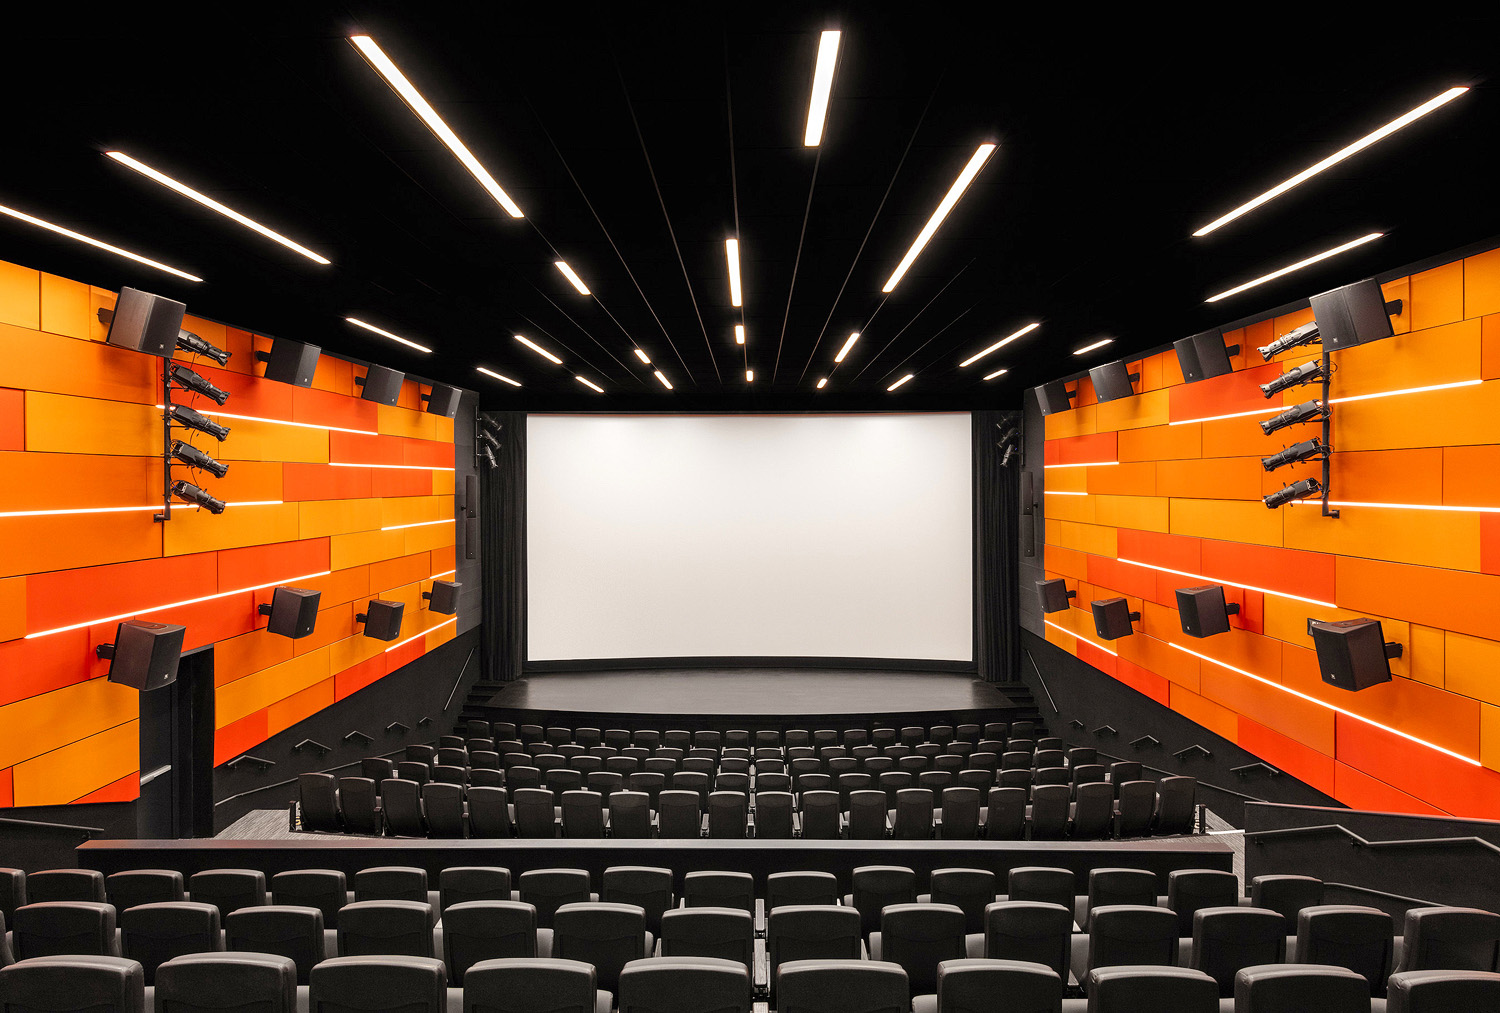 La sala Cinemark® ospitata nel museo include un sistema di proiezione cinematografica con un sistema sonoro integrato e un sistema AV separato che supporta eventi pubblici e privati.